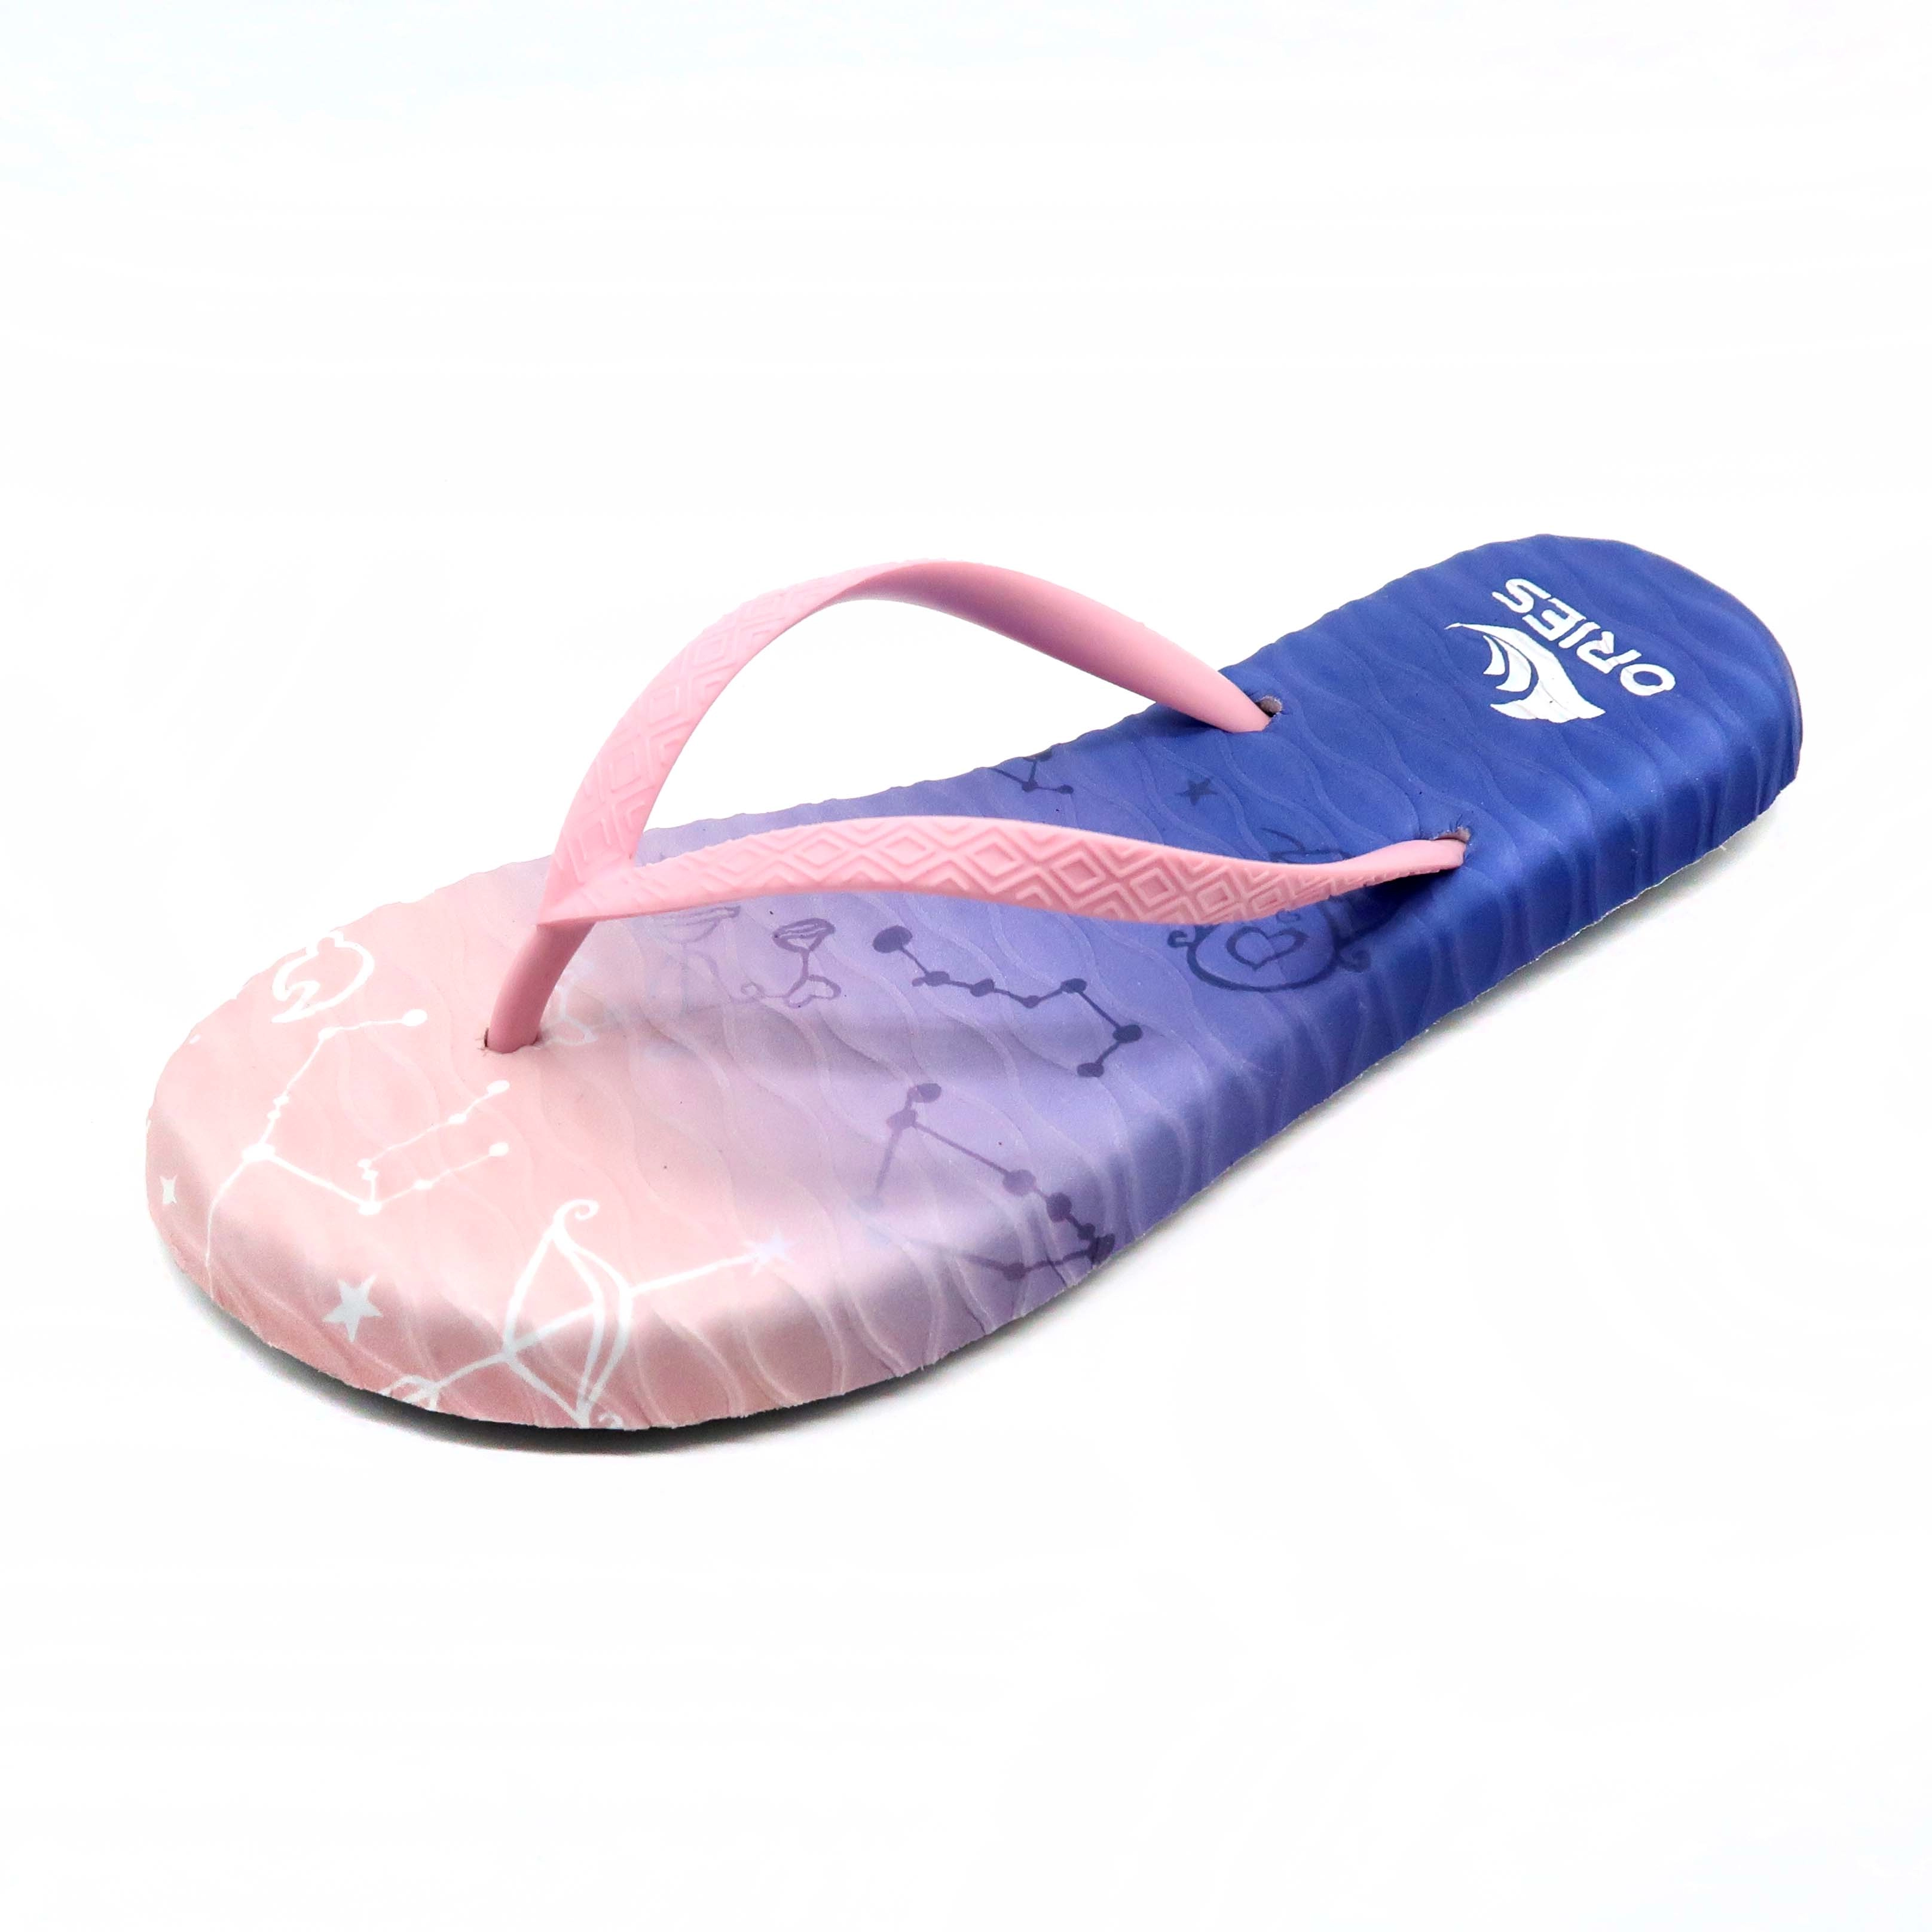 Impressão digital uv constelação massagem ao ar livre chinelos chinelos sandália